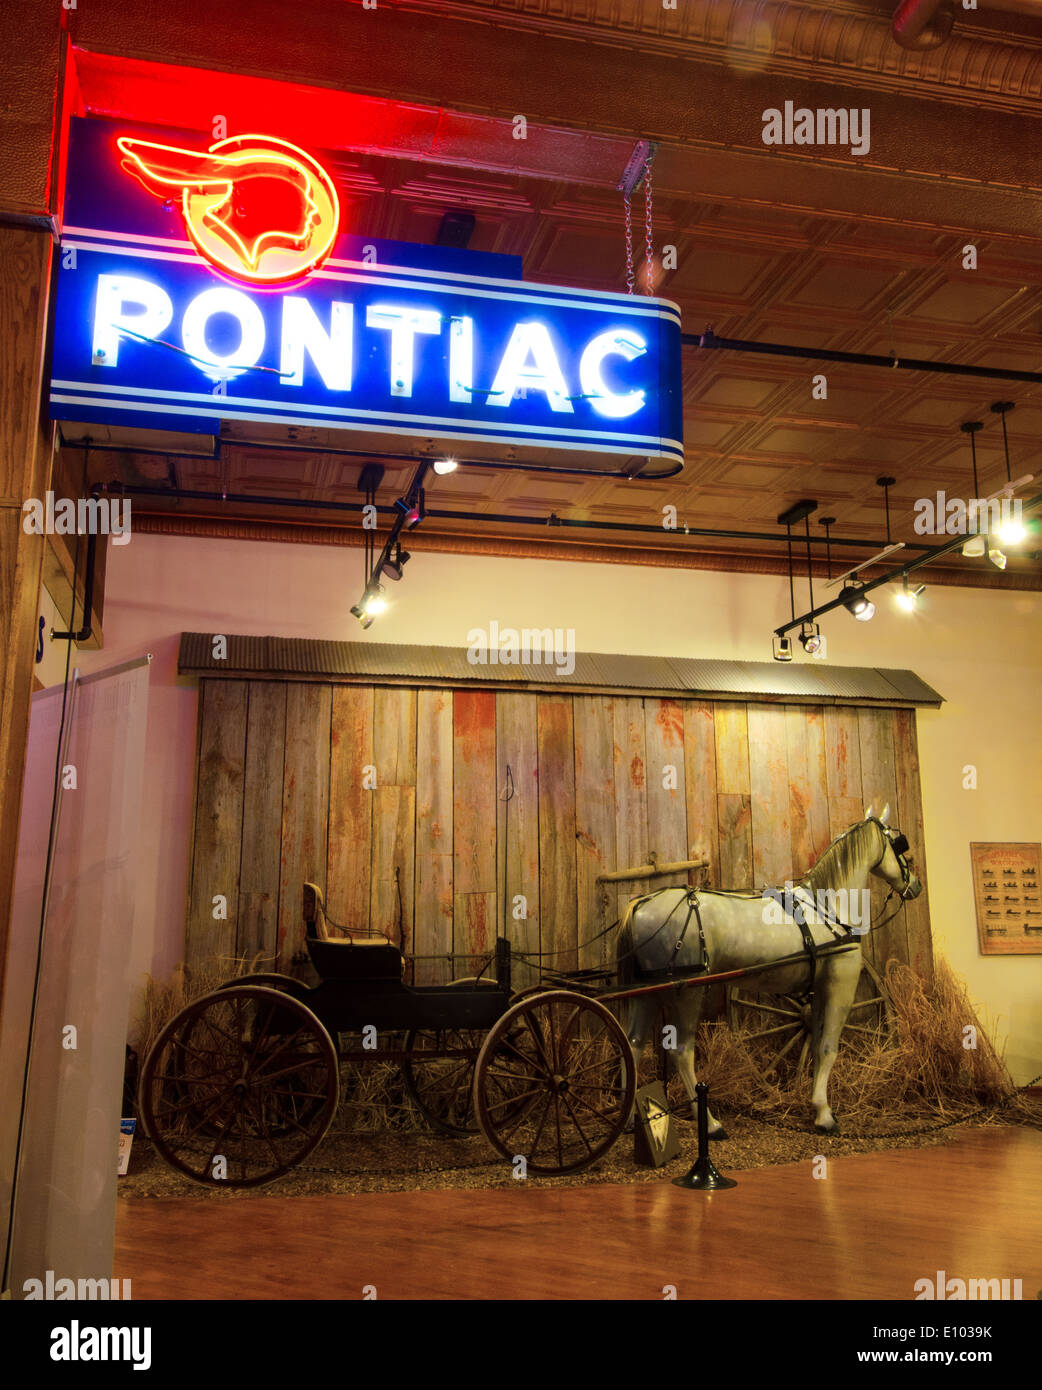 Exposition au Musée de l'Pontiac-Oakland à Pontiac, Michigan, une ville le long de la Route 66 montrant un Cheval et buggy Banque D'Images